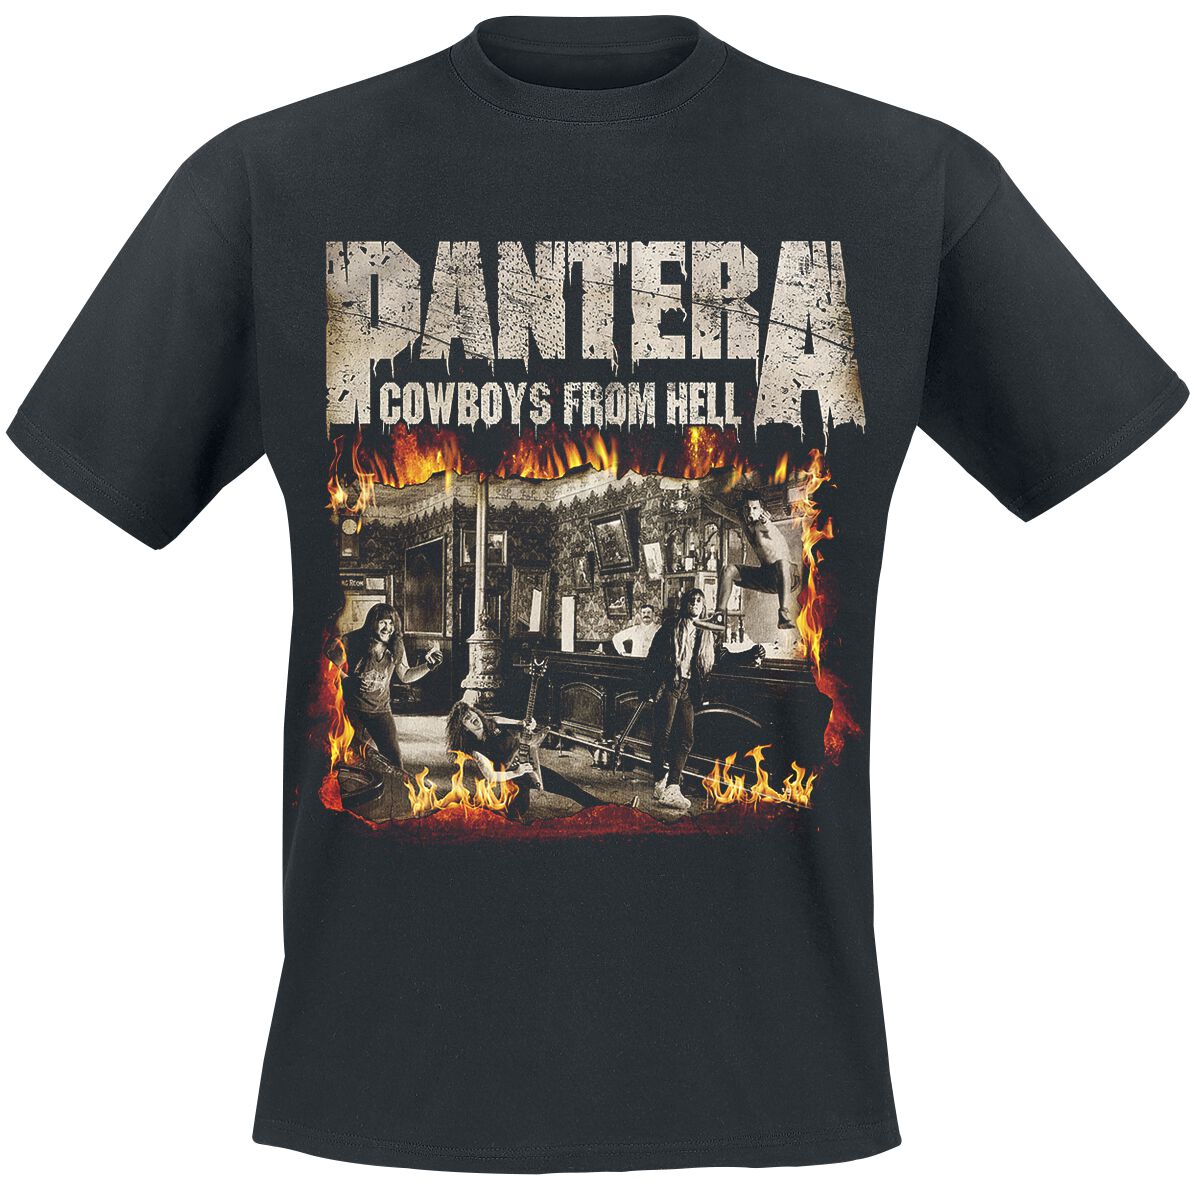 Pantera T-Shirt - Cowboys From Hell - Fire Frame - S bis XXL - für Männer - Größe S - schwarz  - Lizenziertes Merchandise!